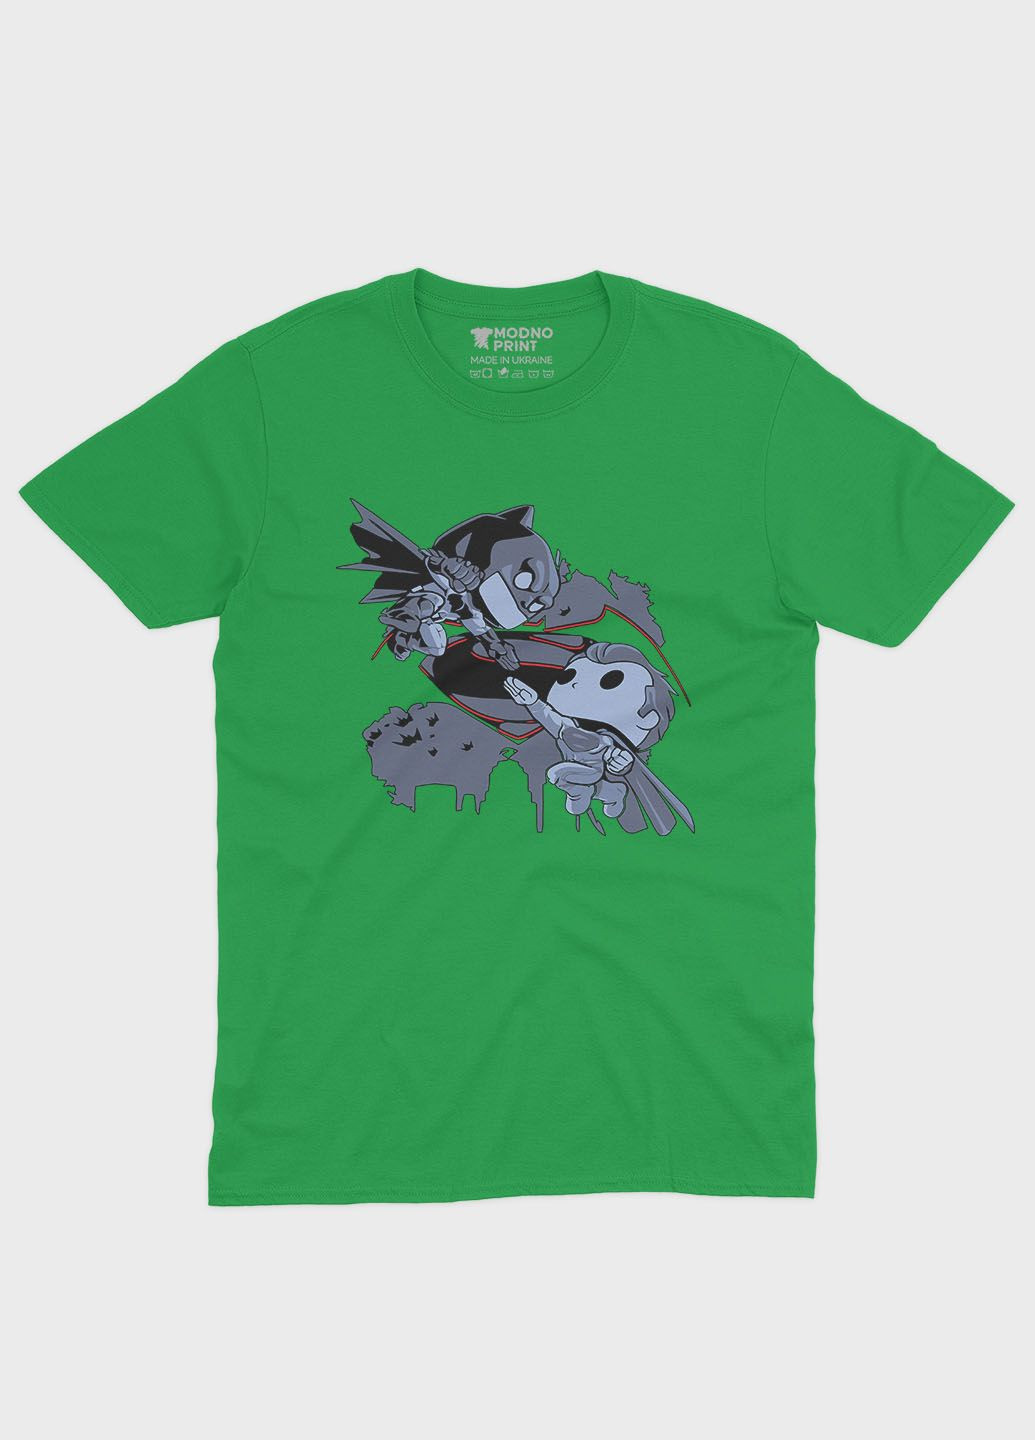 Зеленая демисезонная футболка для мальчика с принтом супергероя - бэтмен (ts001-1-keg-006-003-027-b) Modno